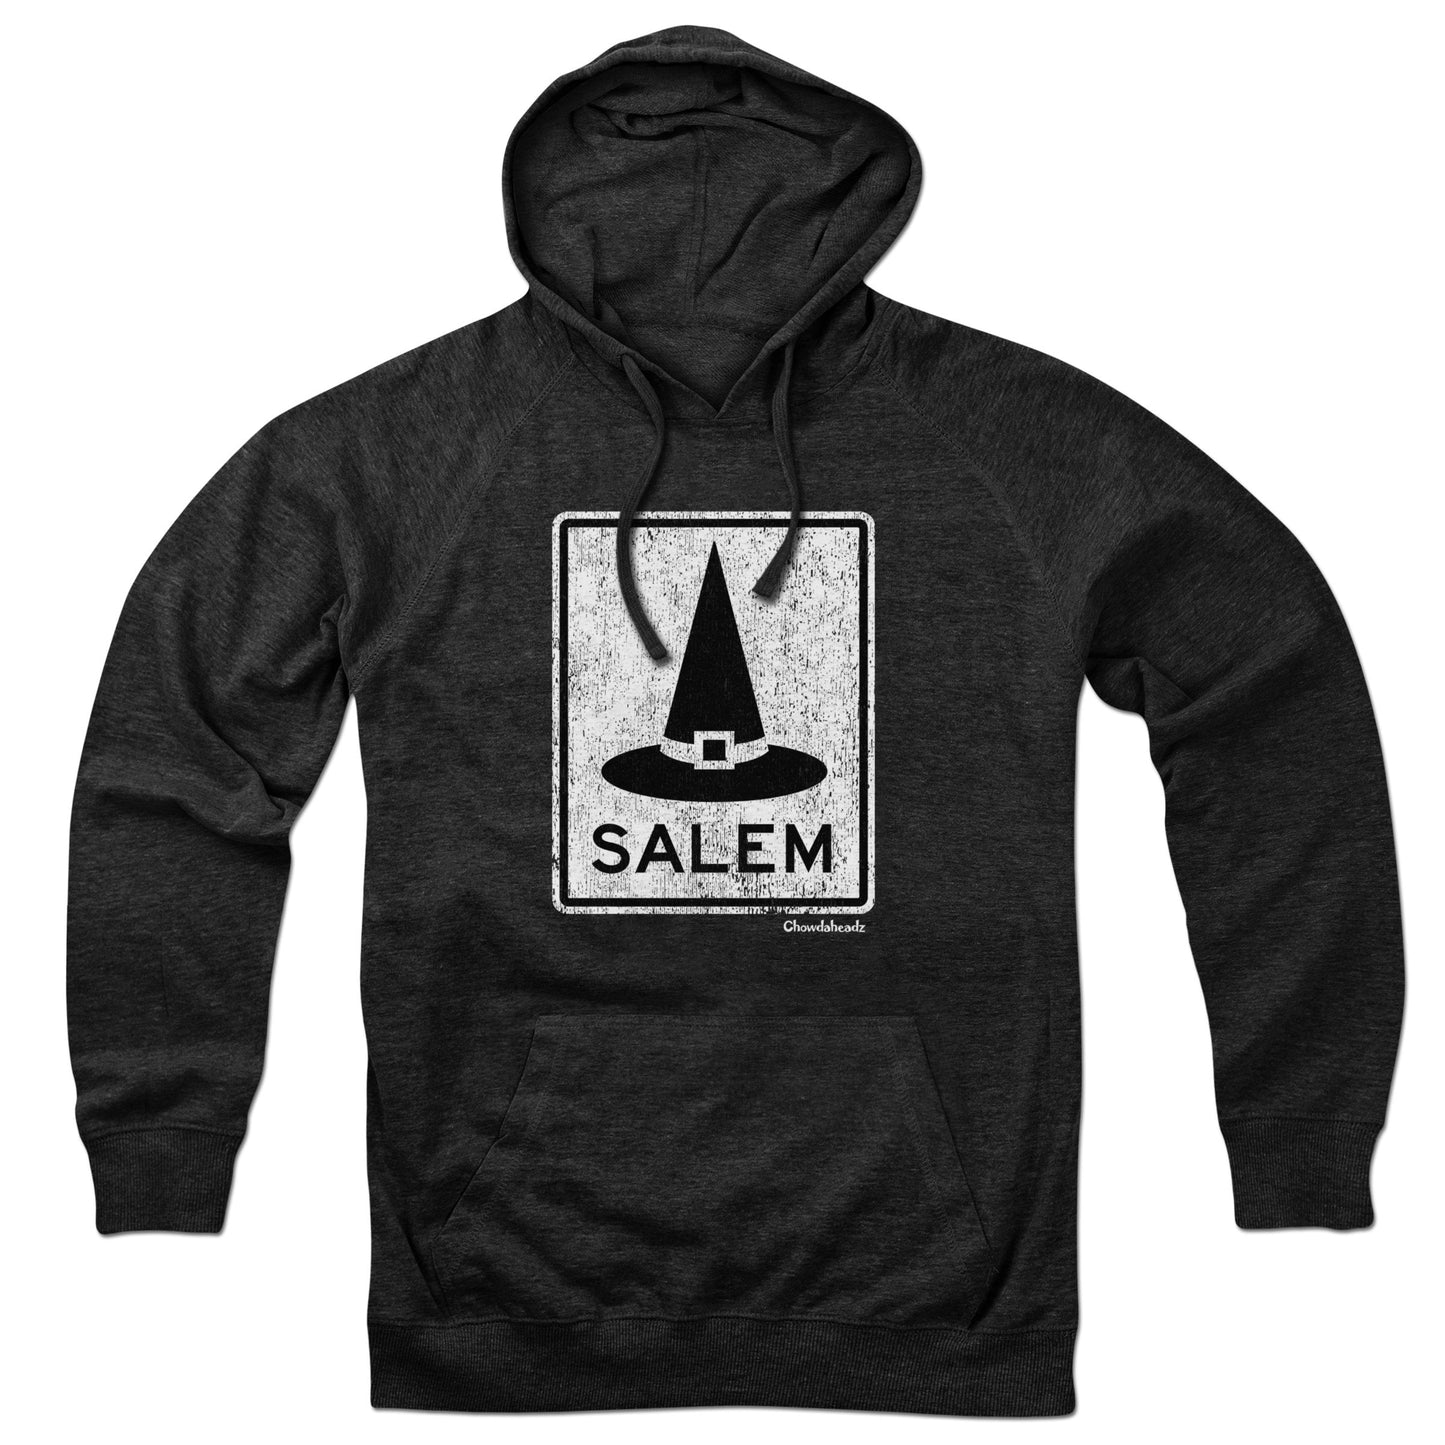 Salem MA Witch Hat Sign Hoodie - Chowdaheadz